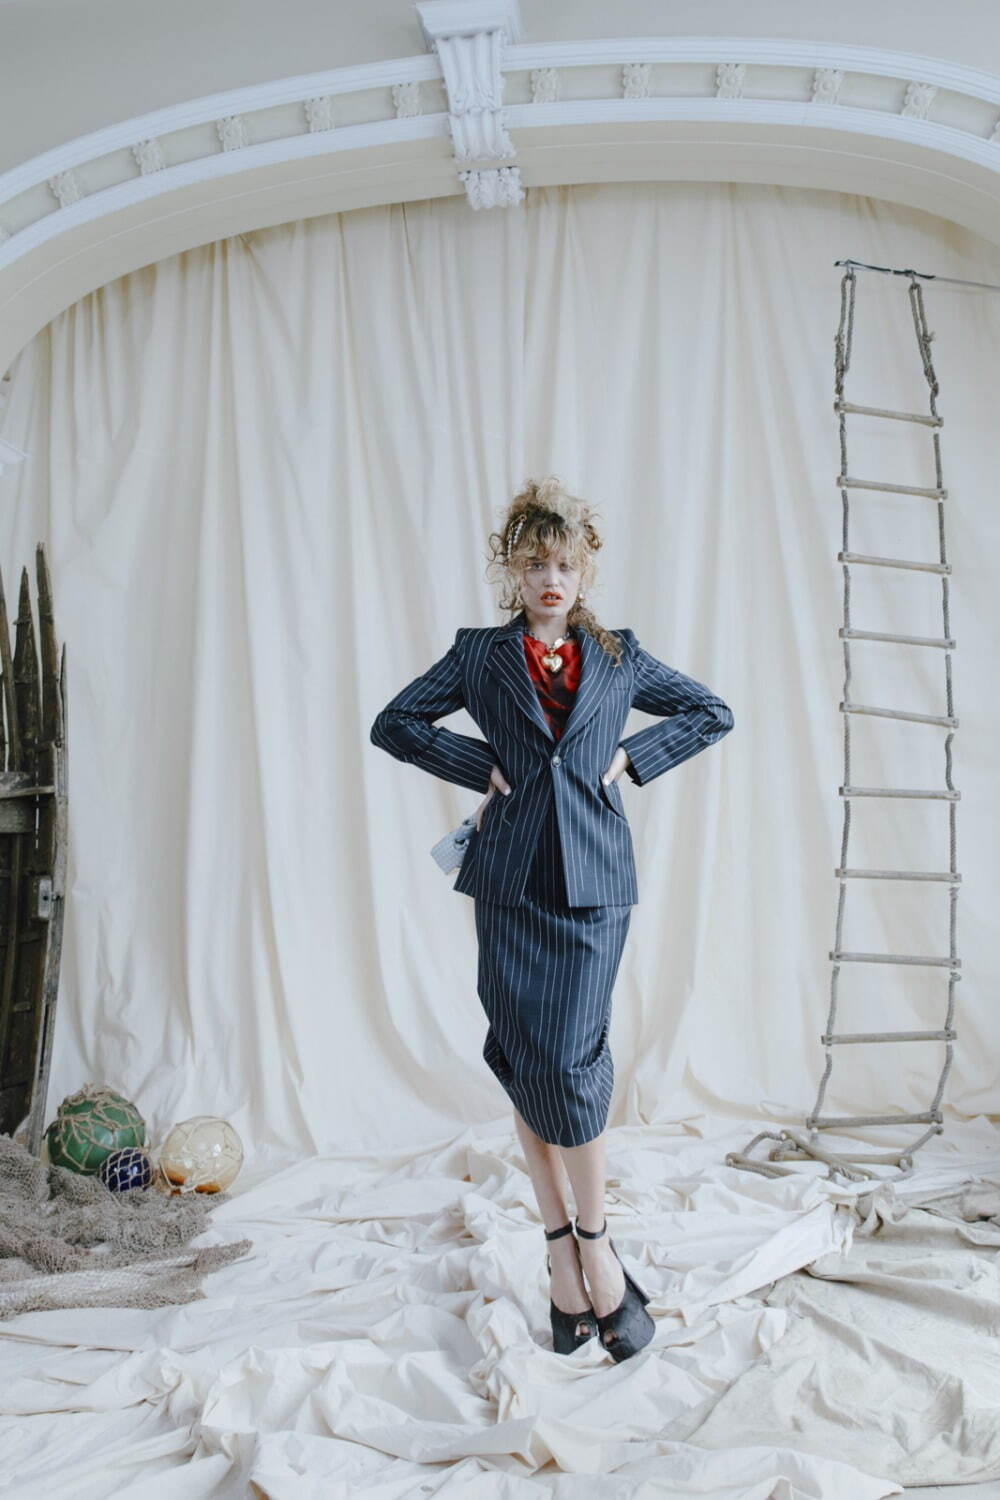 ヴィヴィアン・ウエストウッド(Vivienne Westwood) 2022年春夏ウィメンズ&メンズコレクション  - 写真20